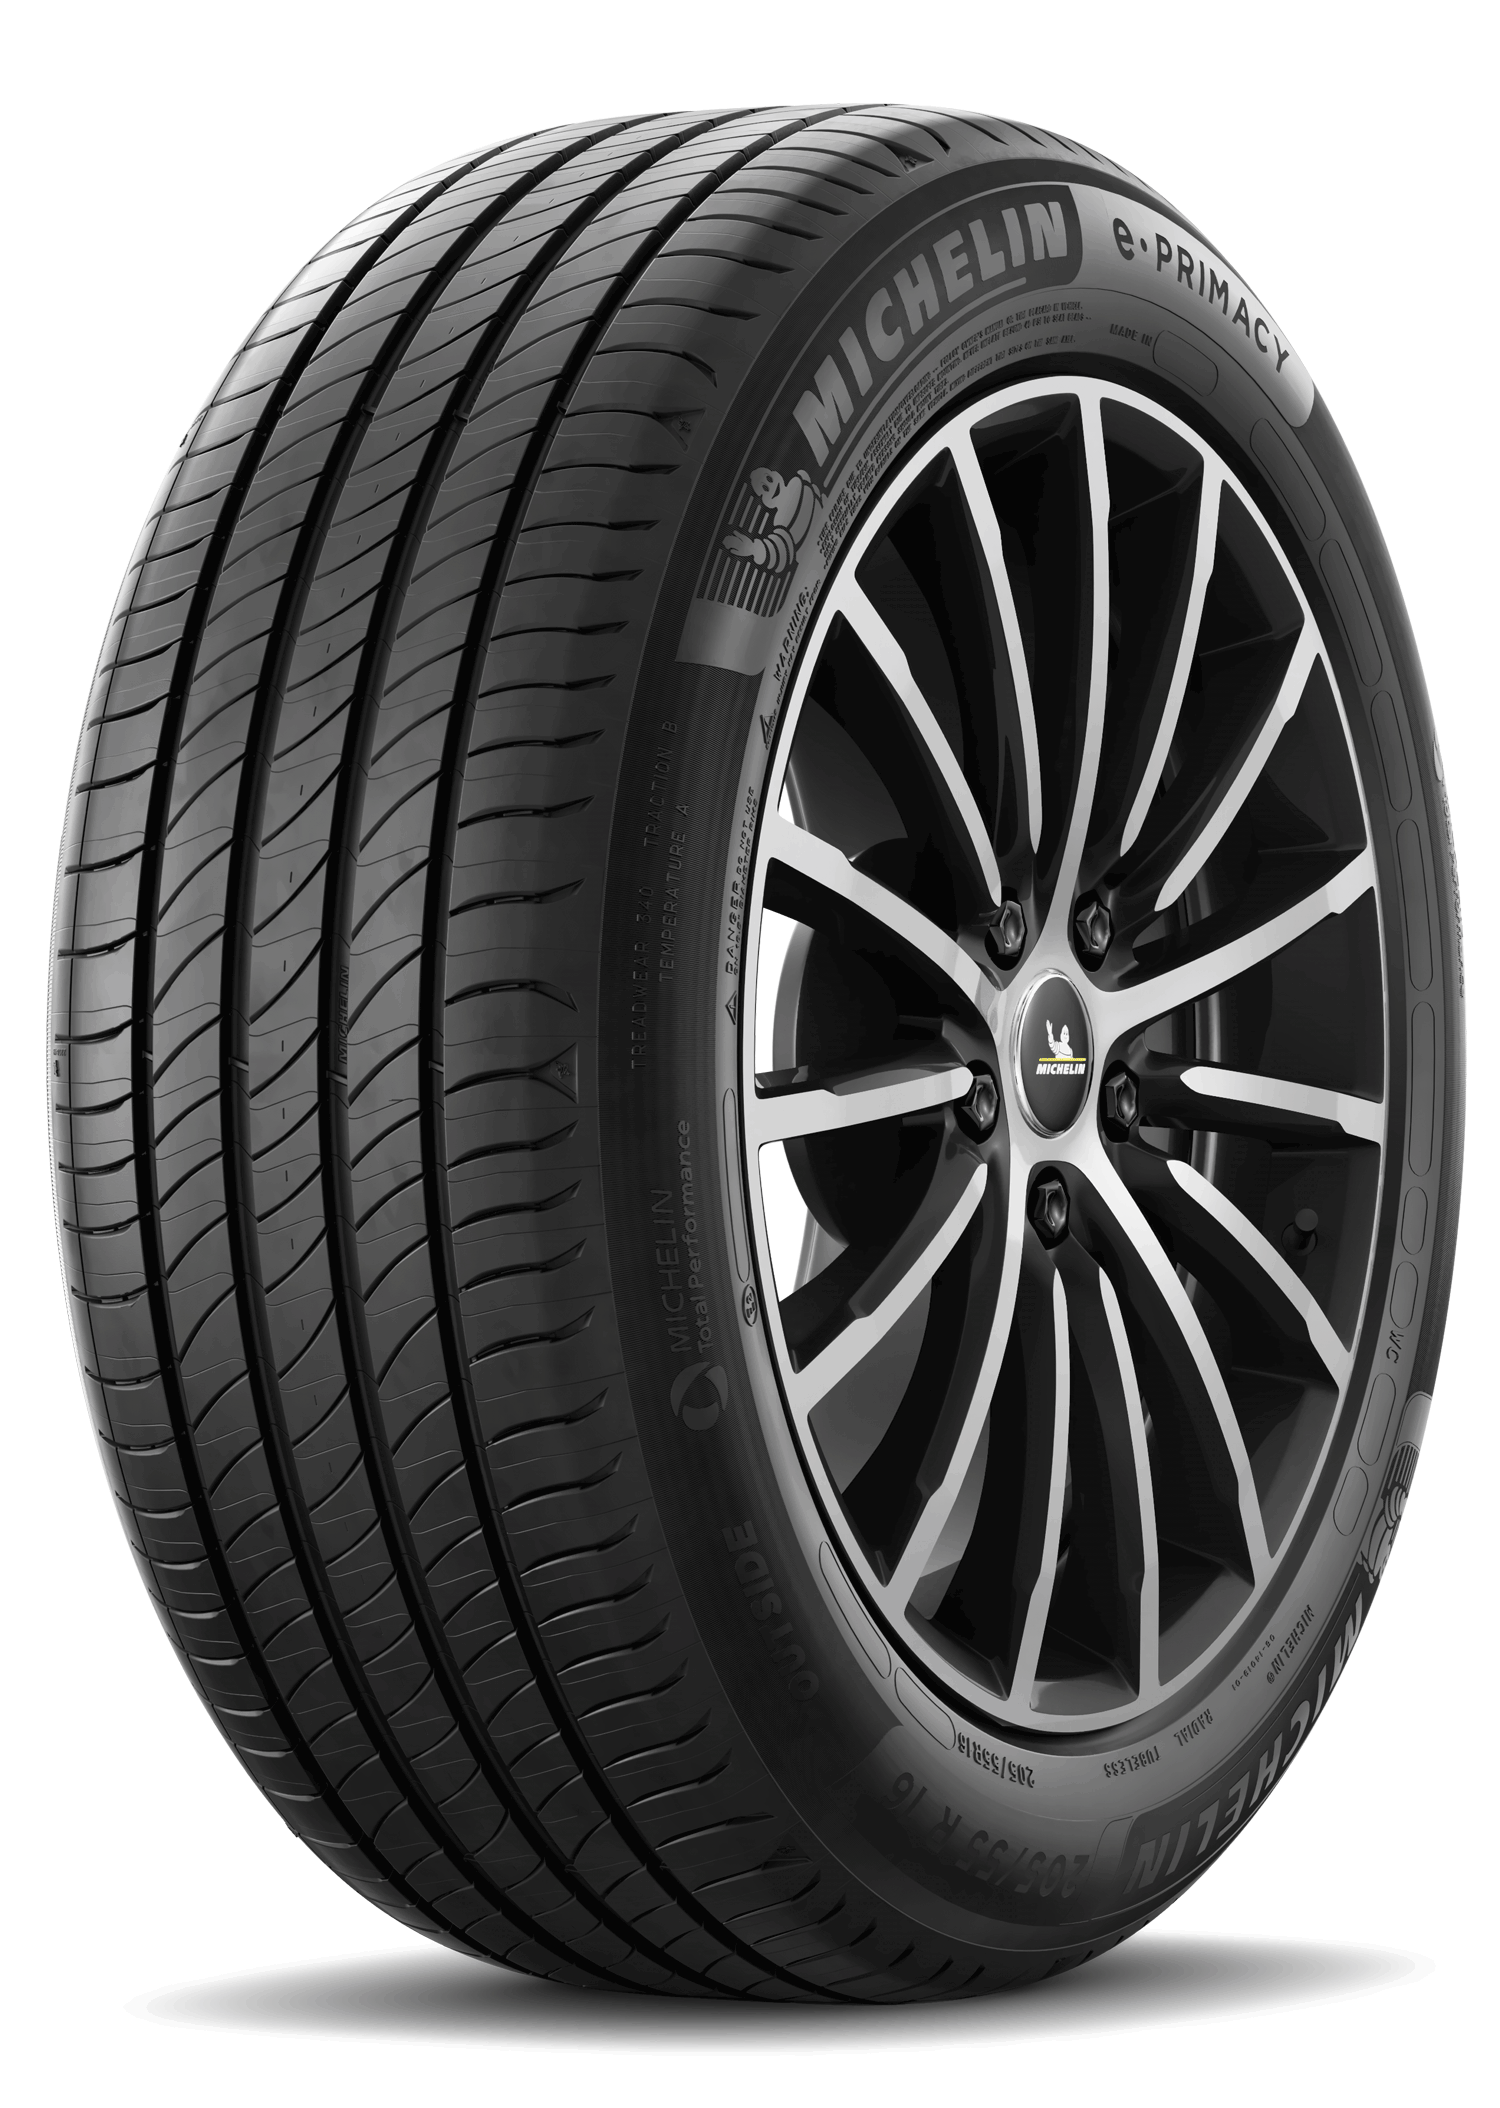 Gomme Nuove Michelin 195/55 R16 91T E PRIMACY XL pneumatici nuovi Estivo